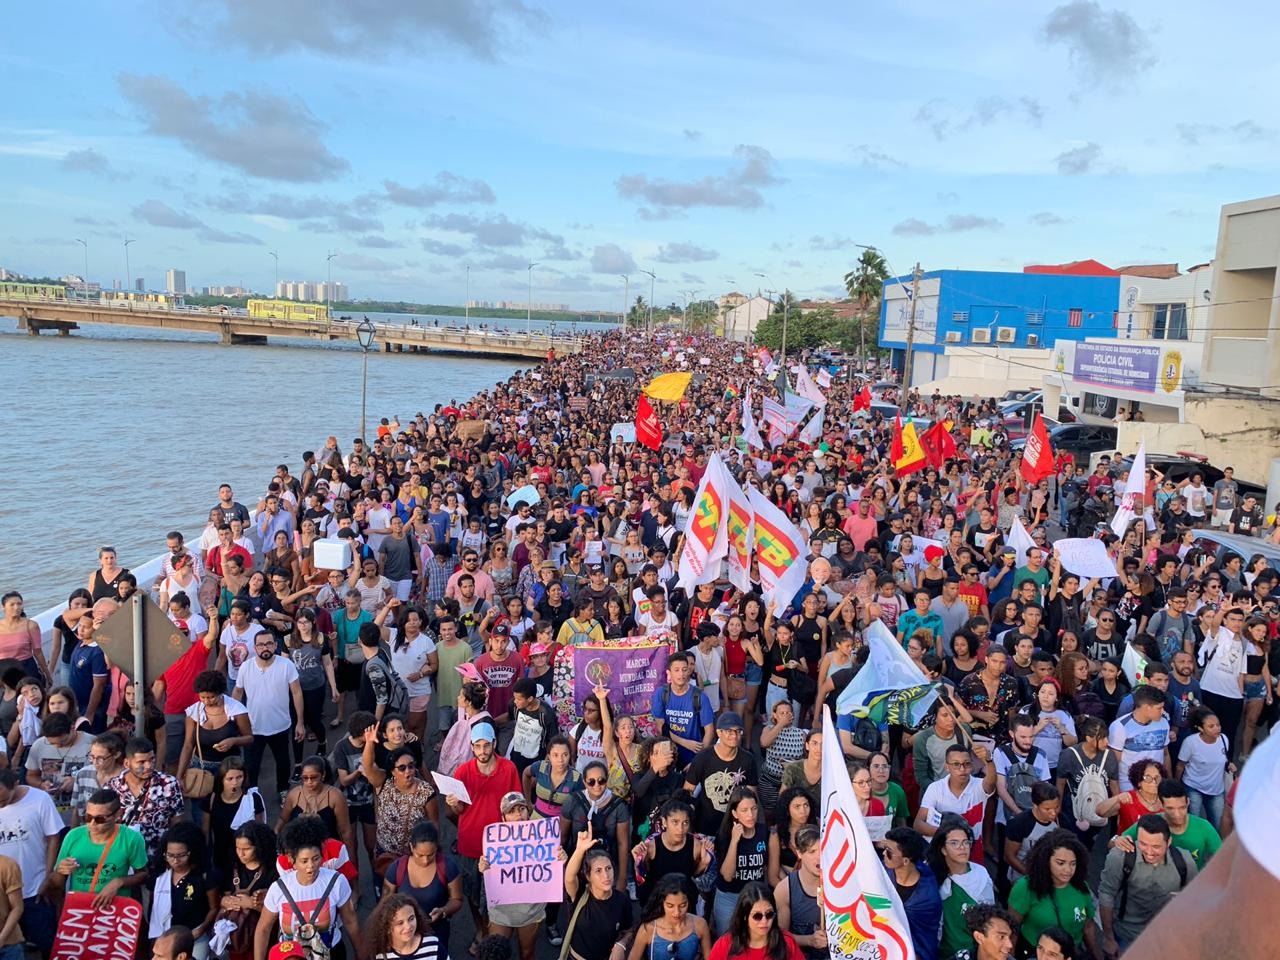 Registro da marcha que percorreu São Luis, a capital do Maranhão (Foto: Divulgação)